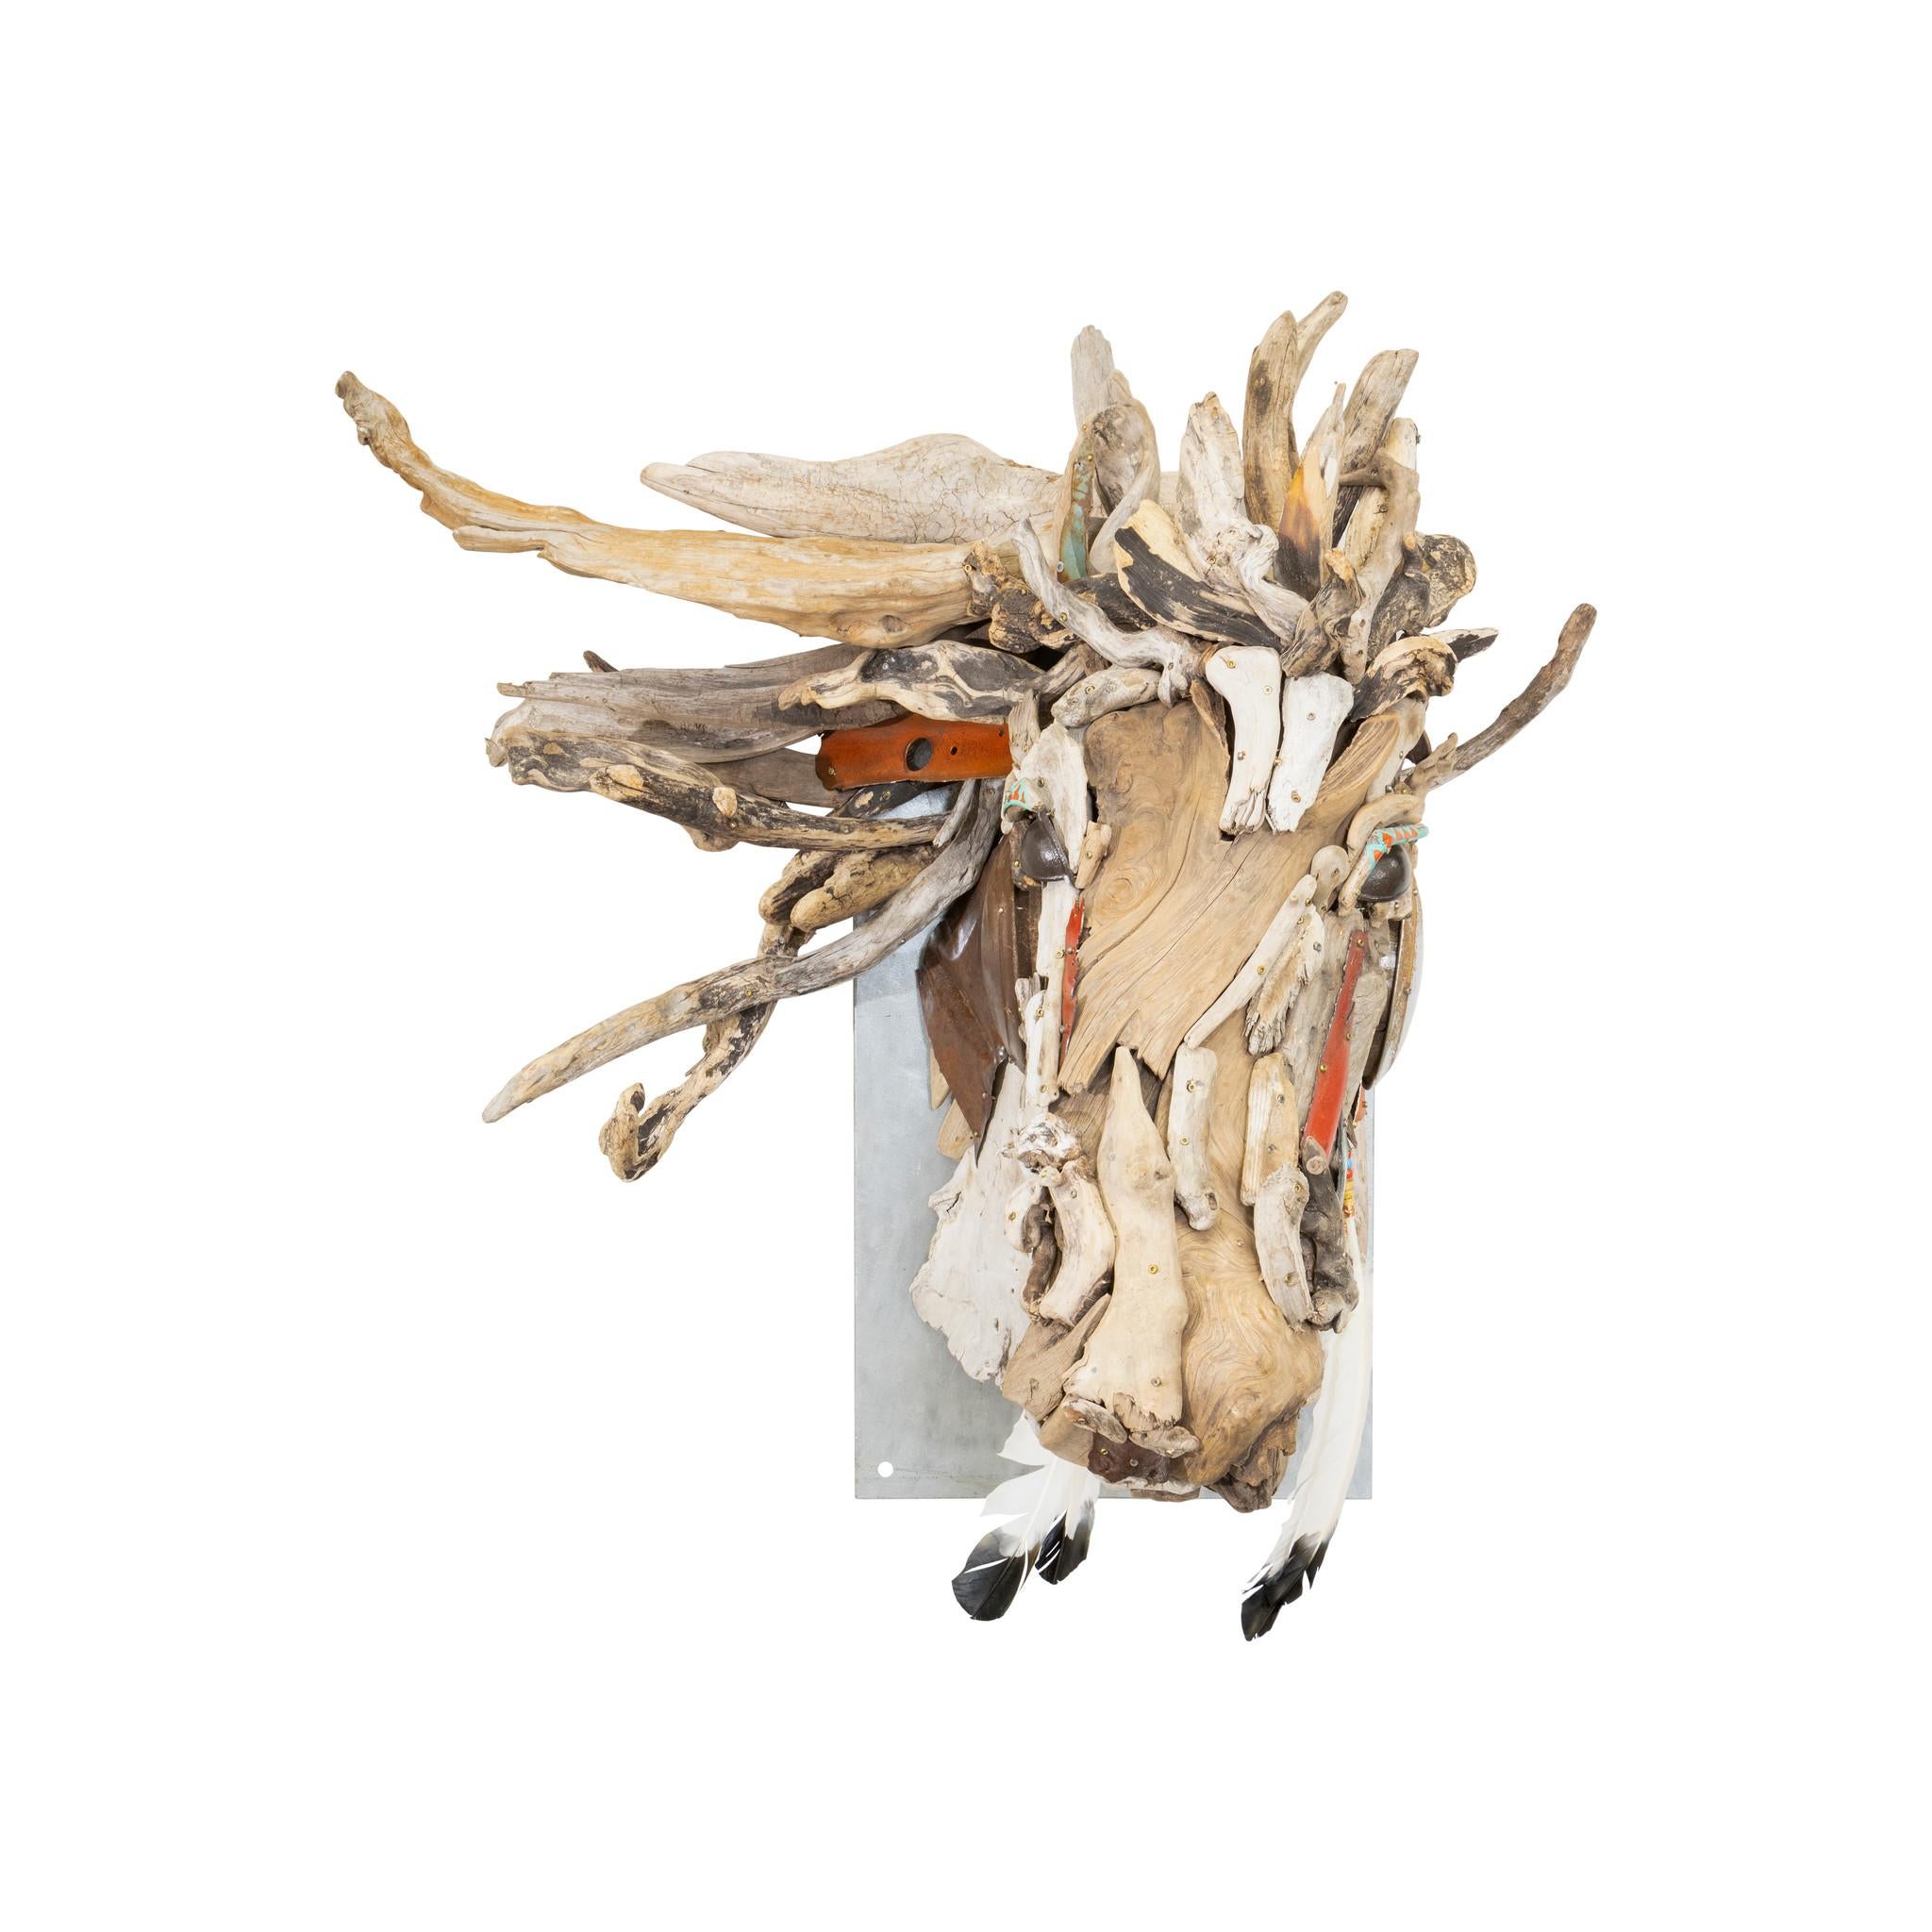 Buste de cheval en bois flotté et ferraille d'acier d'une artiste du Montana par Tina Milsavljevich. Tina a grandi dans la beauté du Colorado, dont les montagnes escarpées à couper le souffle et la faune sauvage ont servi de toile de fond paisible